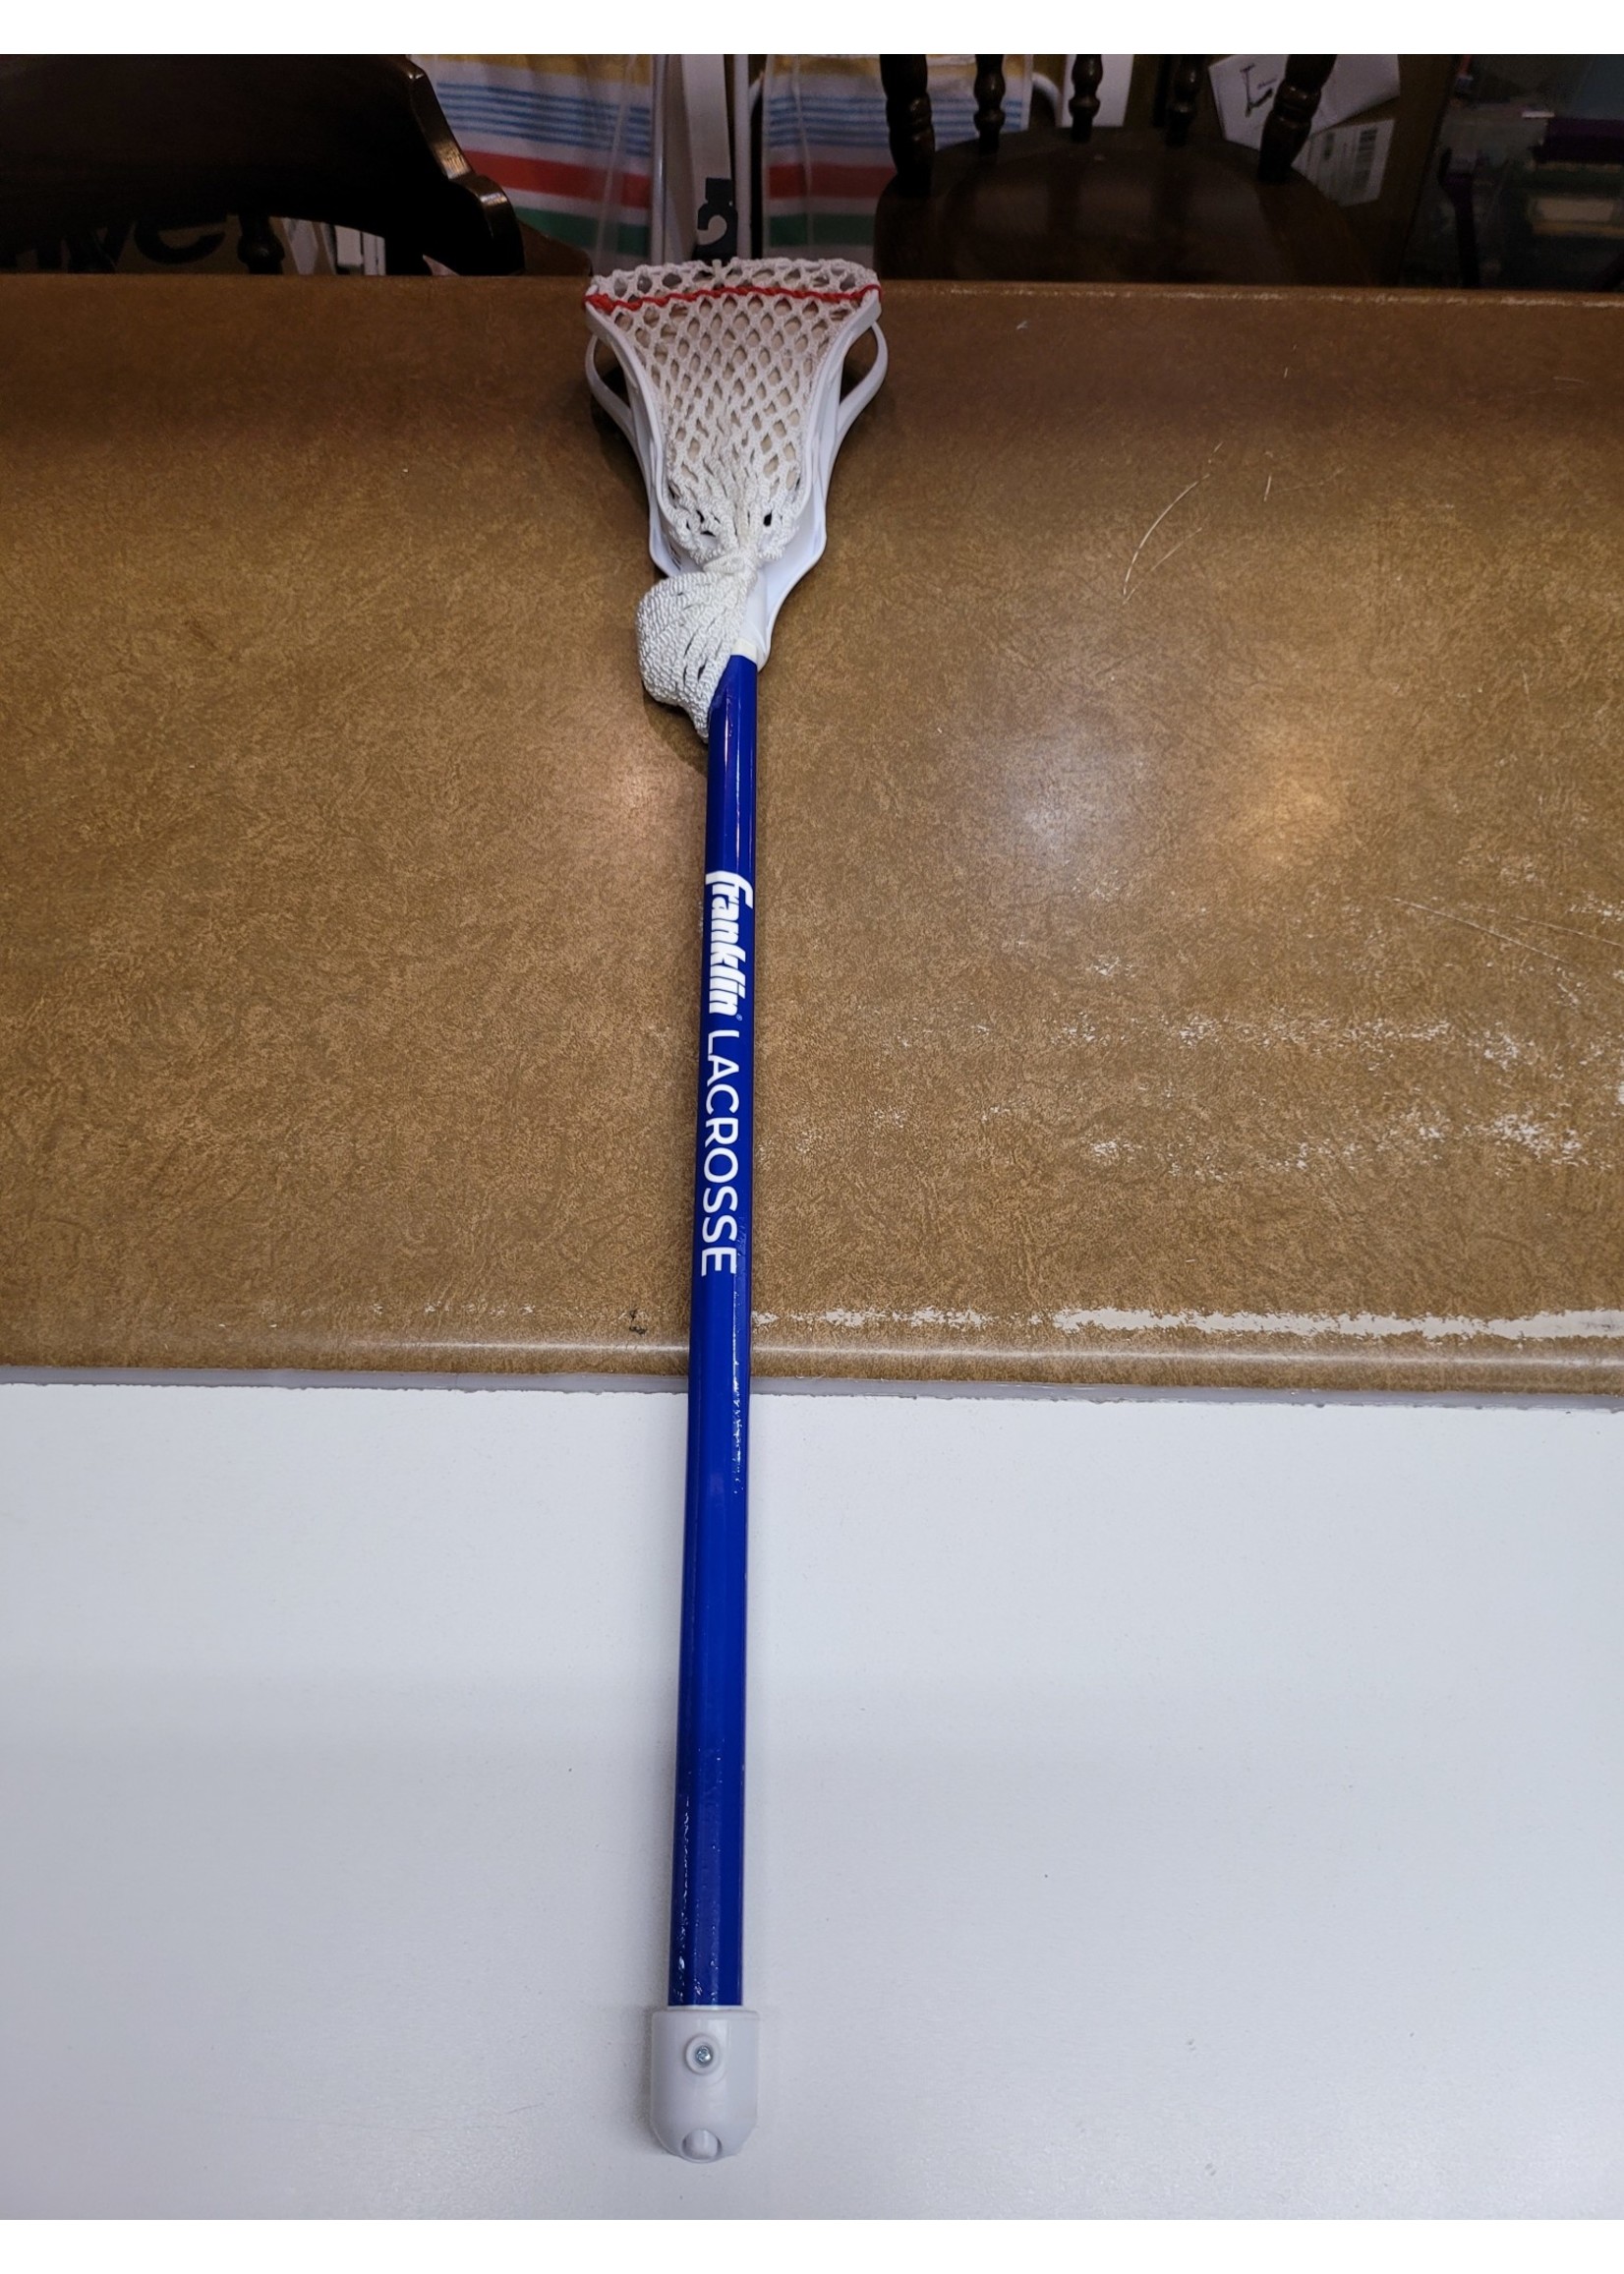 *Stick Only Franklin Sports Lacrosse 1 Stick